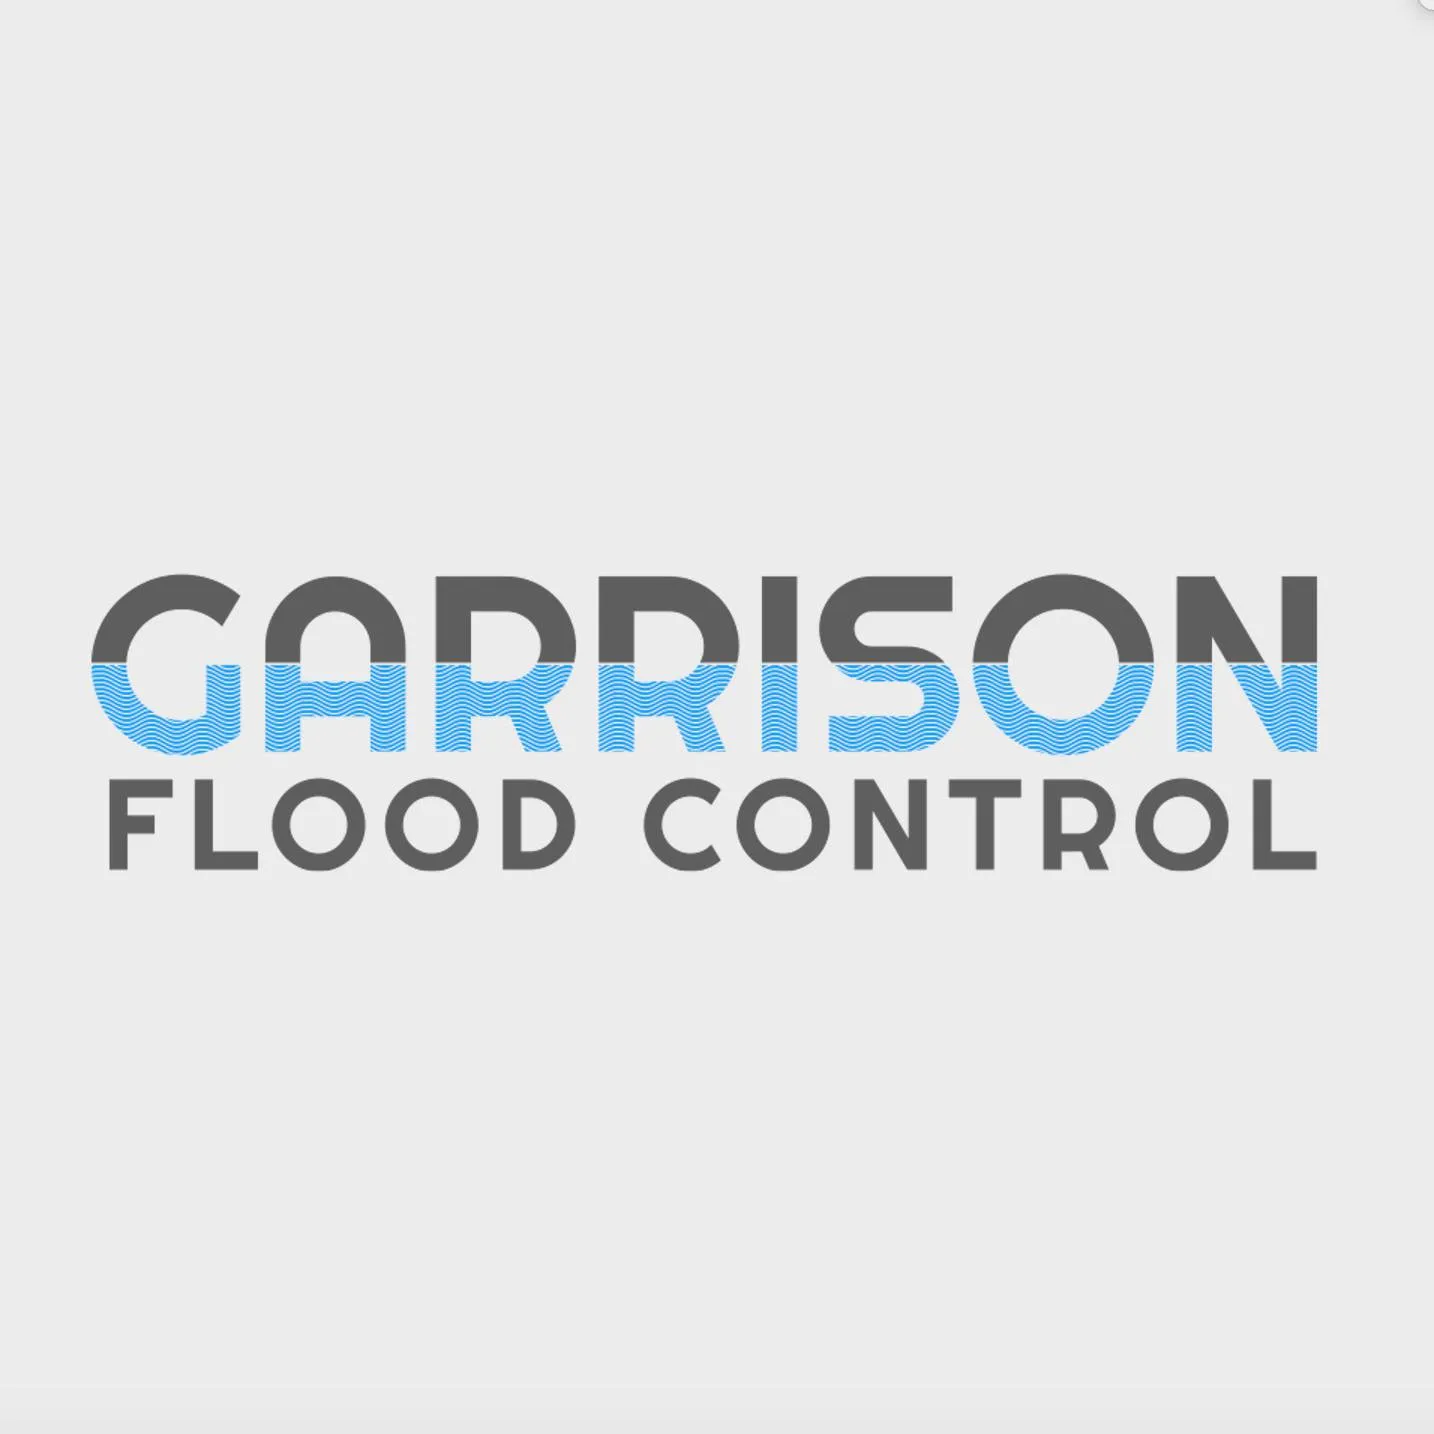 Garrison Flood Control